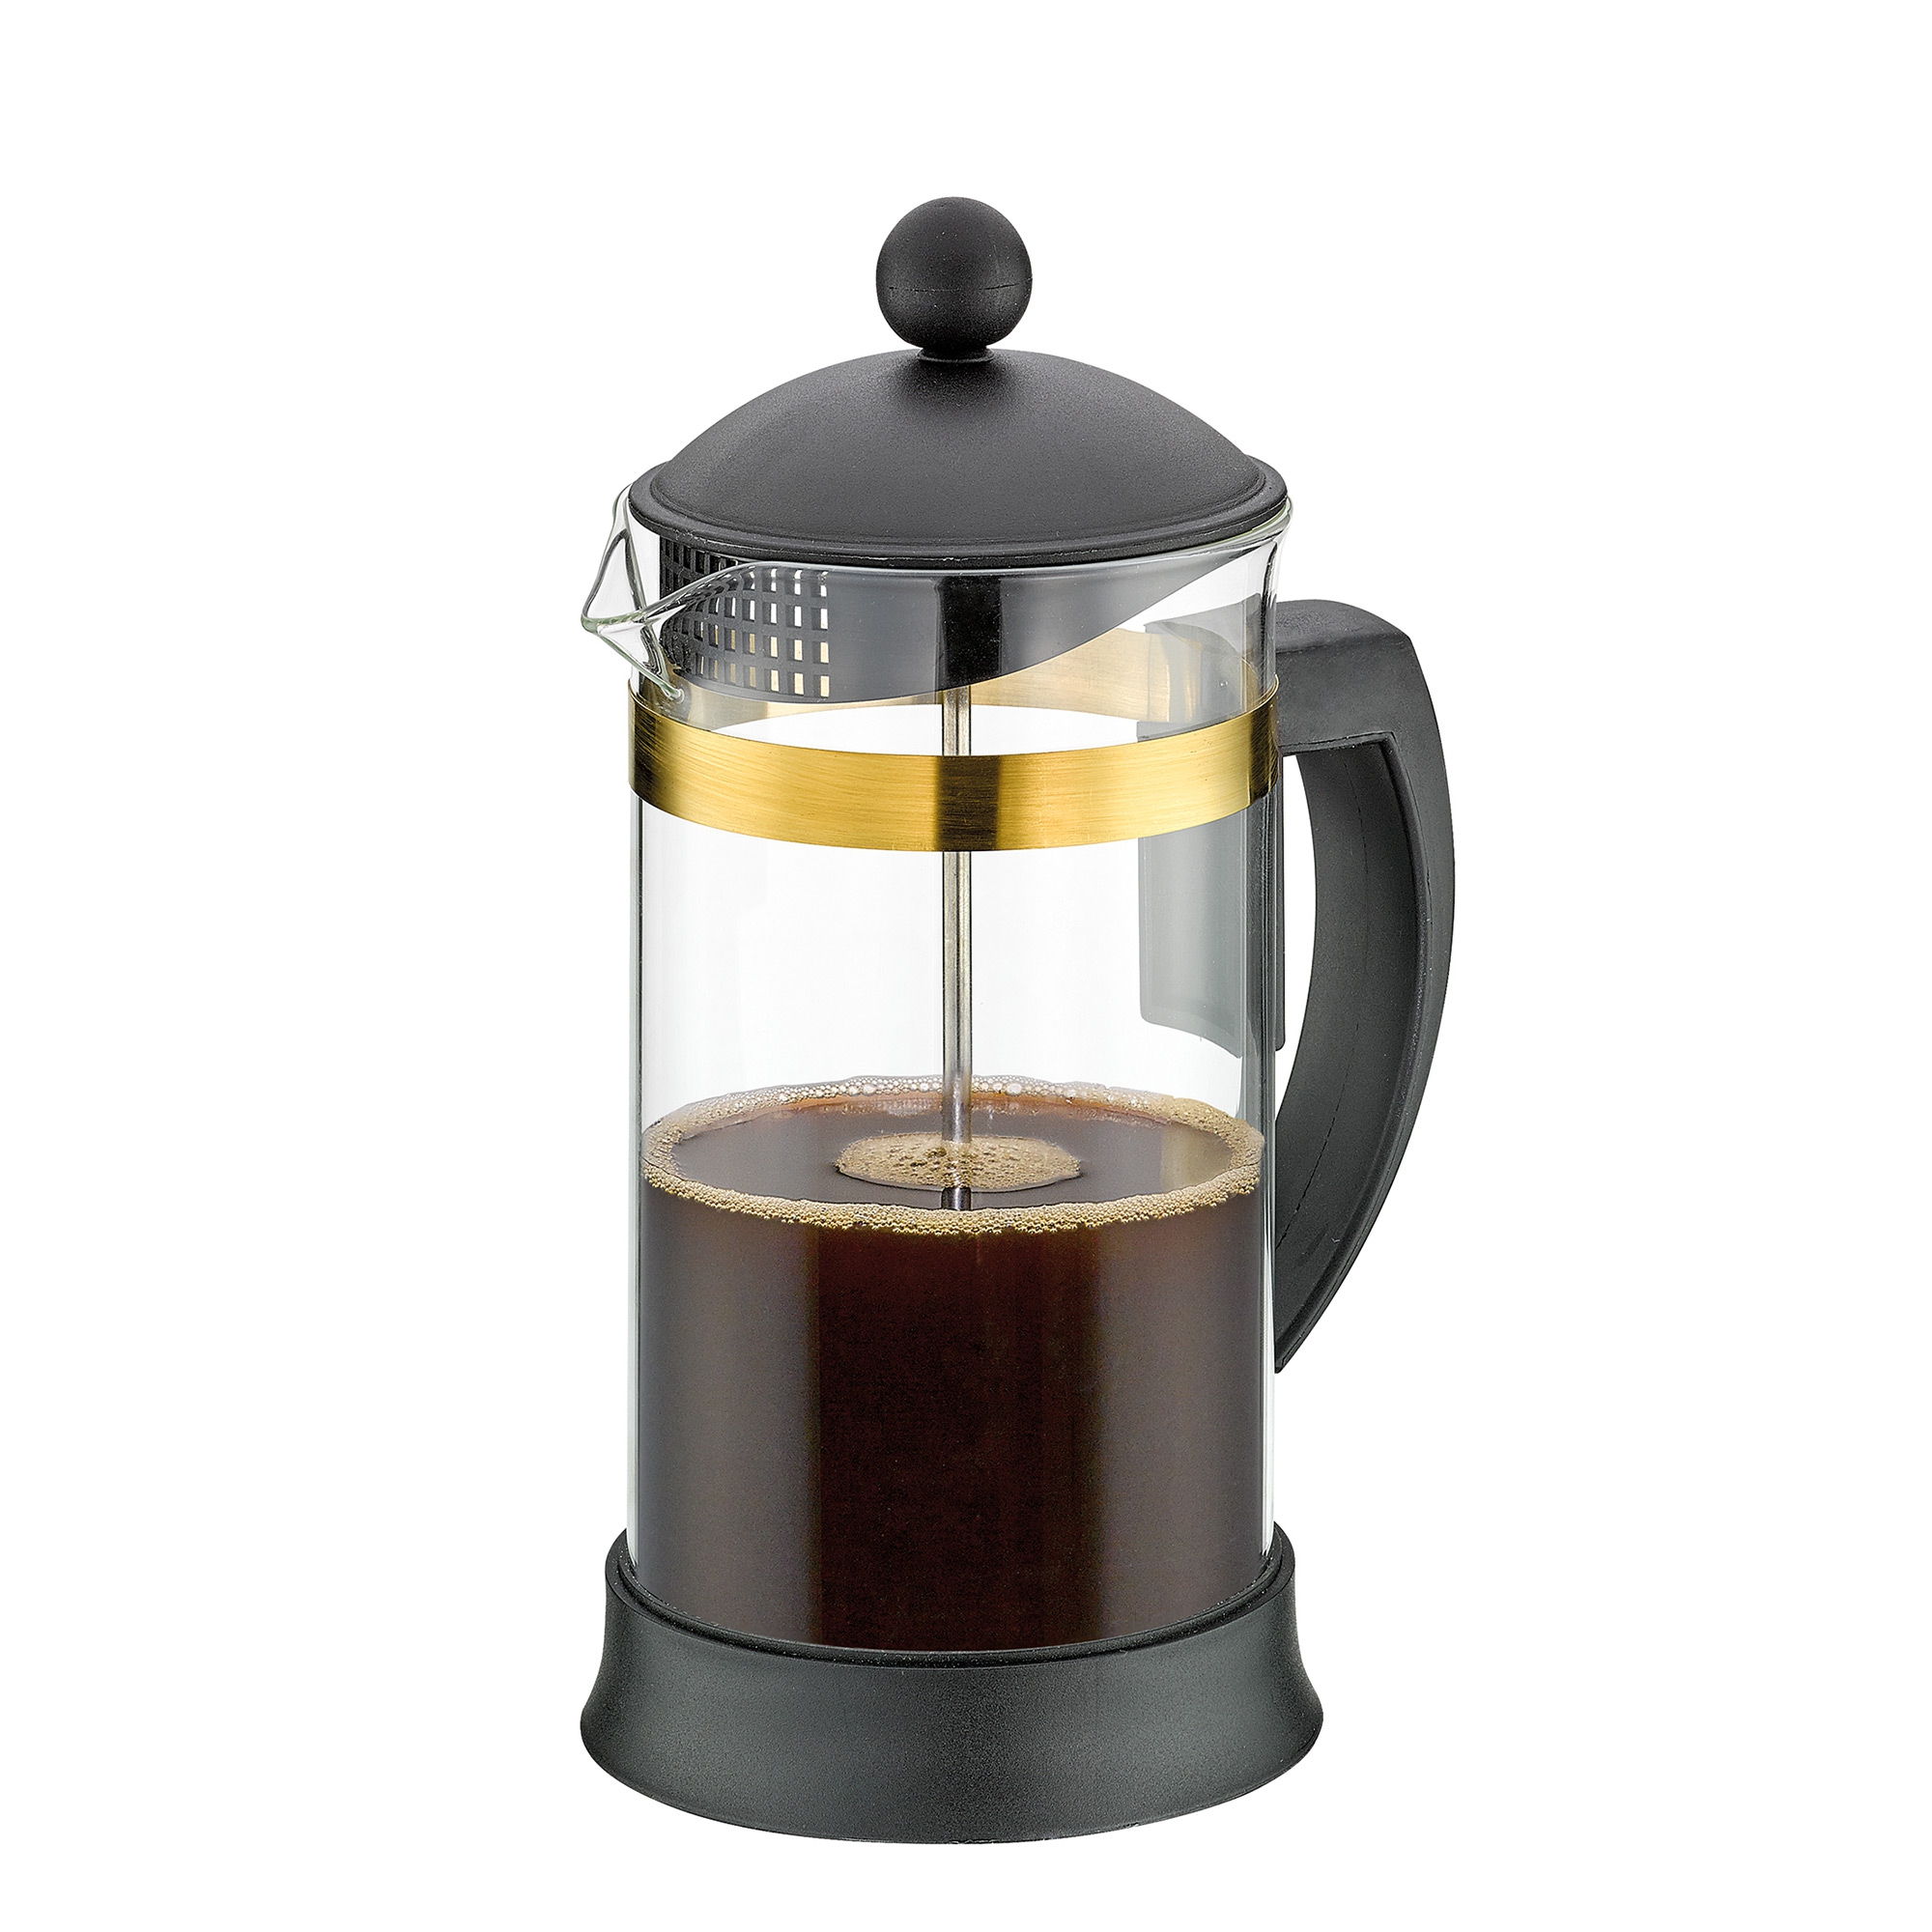 Cilio - Coffee maker MARIELLA ORO - 8 cups